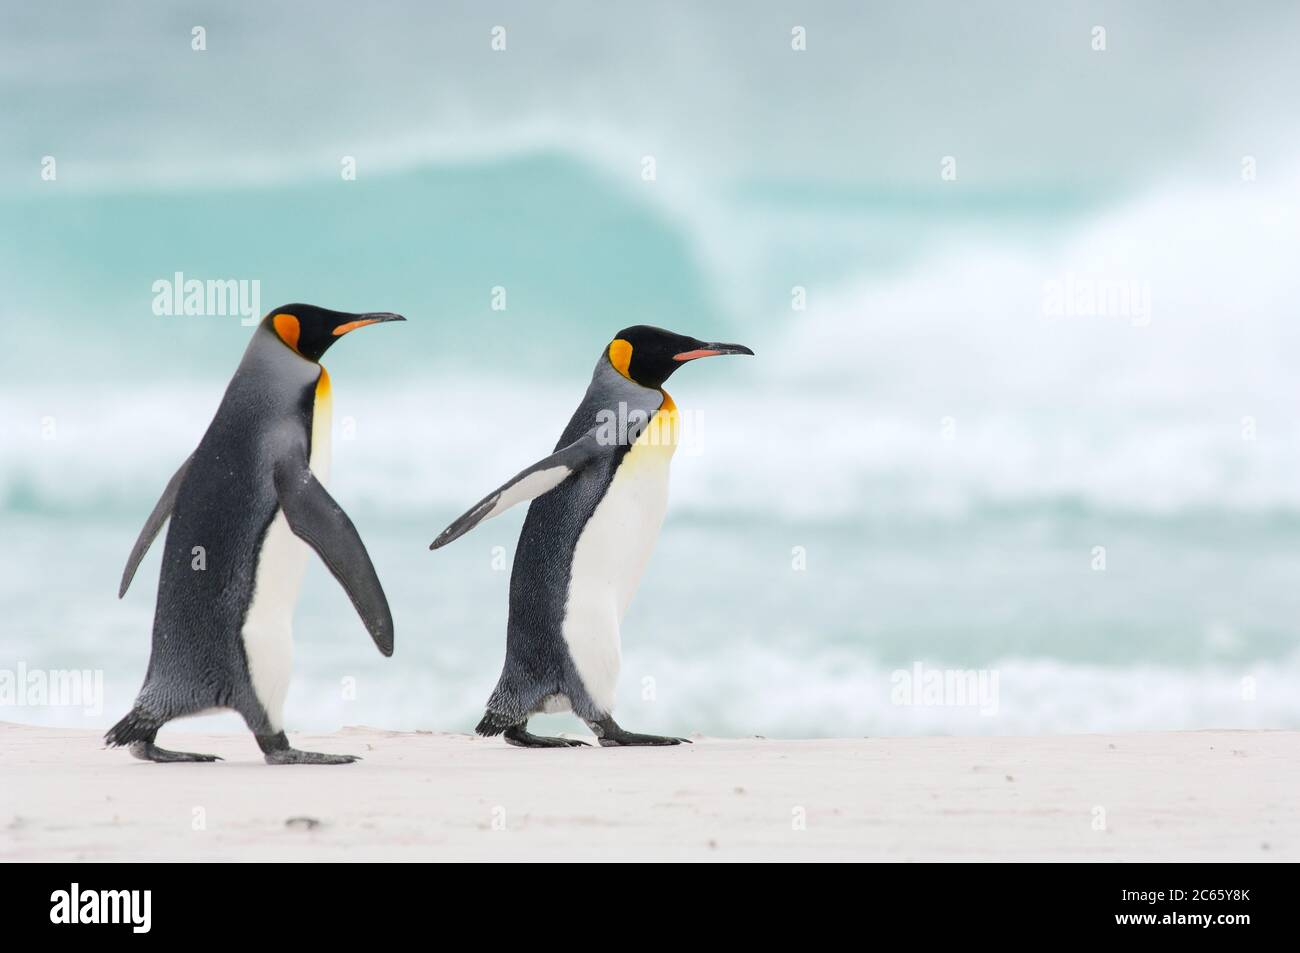 Comenzando y regresando de sus viajes forrajeos los pingüinos rey (Aptenodytes patagonicus) a menudo se reúnen en grupos. Este hábito potencialmente reduce el riesgo de ser capturado por sus depredadores acuáticos, por ejemplo el león marino y la orca. Foto de stock